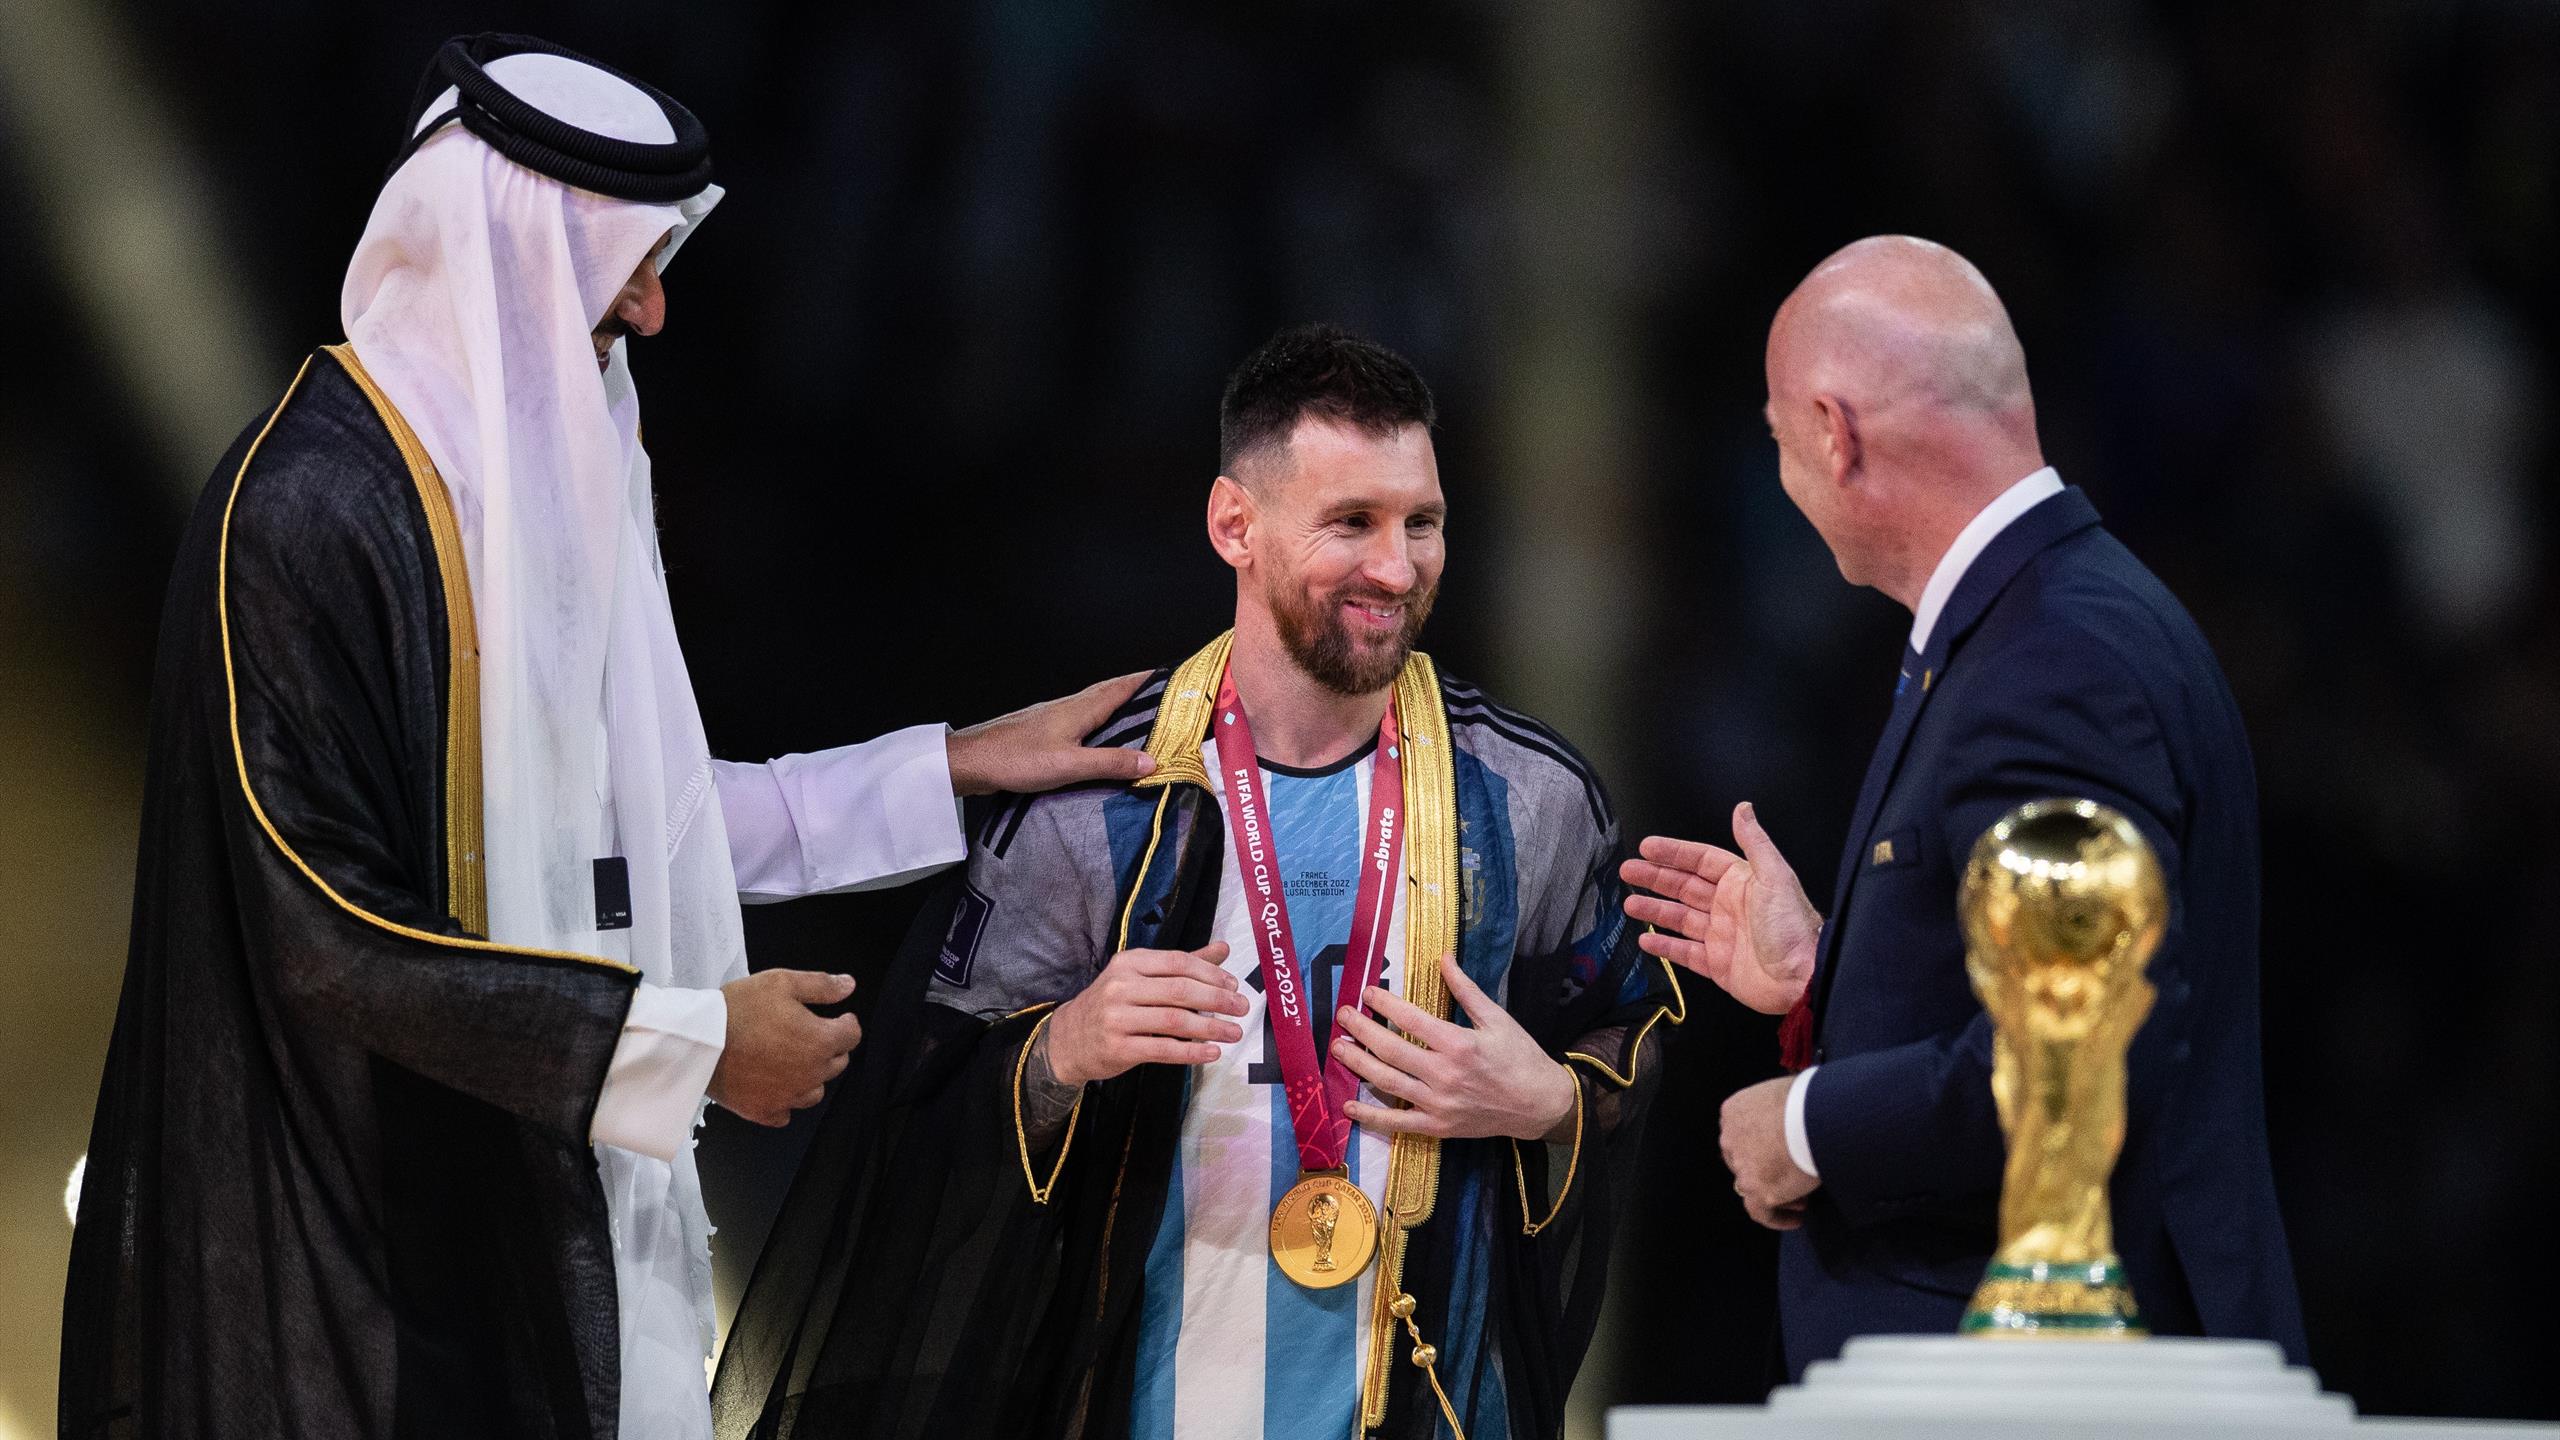 La 'tunica' di Messi diventa un caso: cosa dicono le regole FIFA